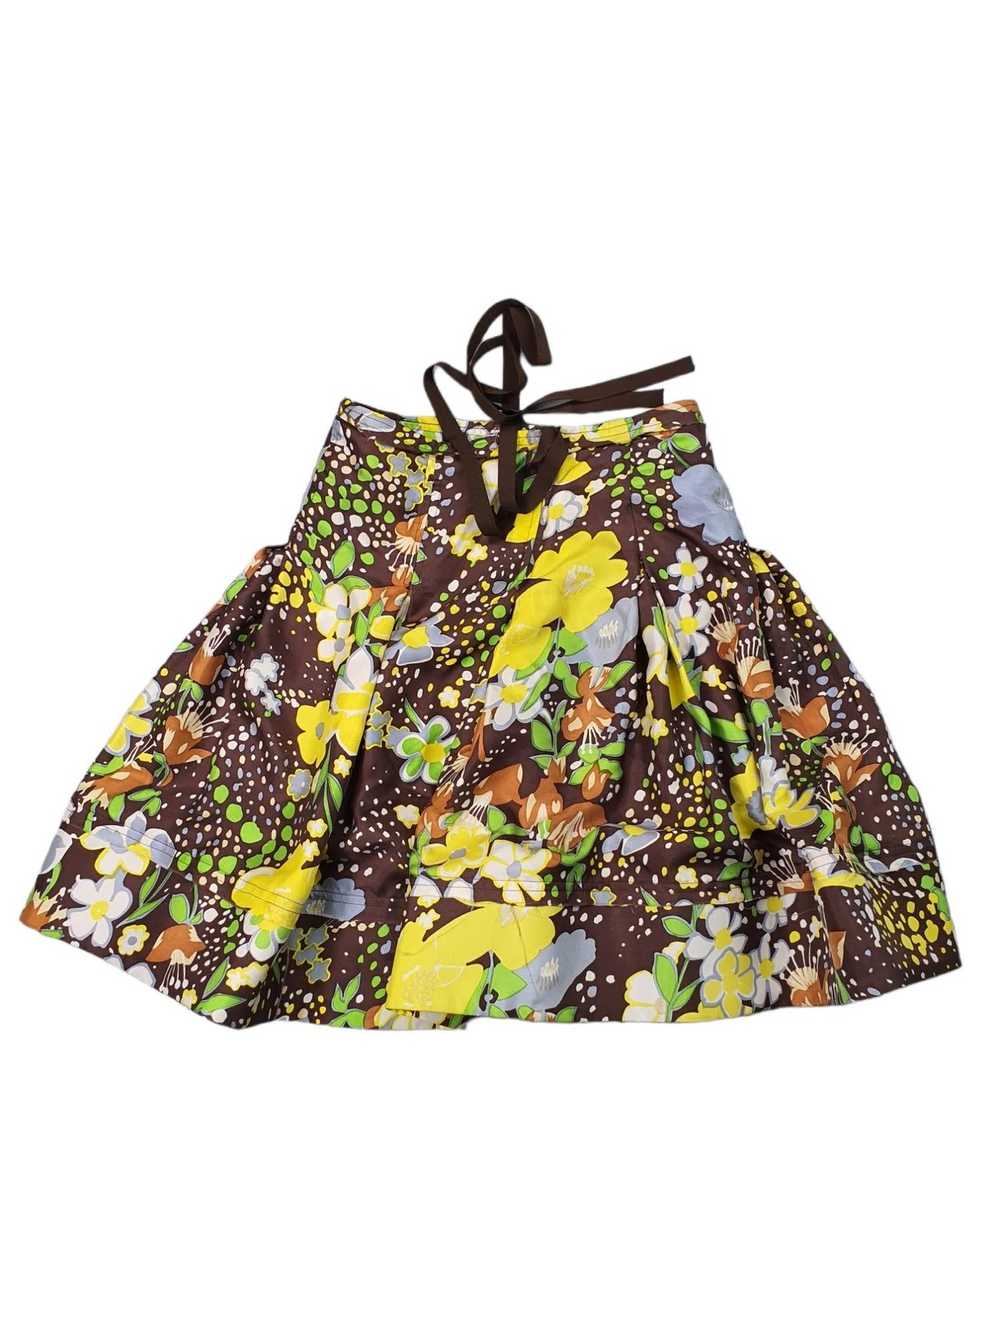 Patrizia Pepe Brown Floral Pattern Silk Skirt Siz… - image 2